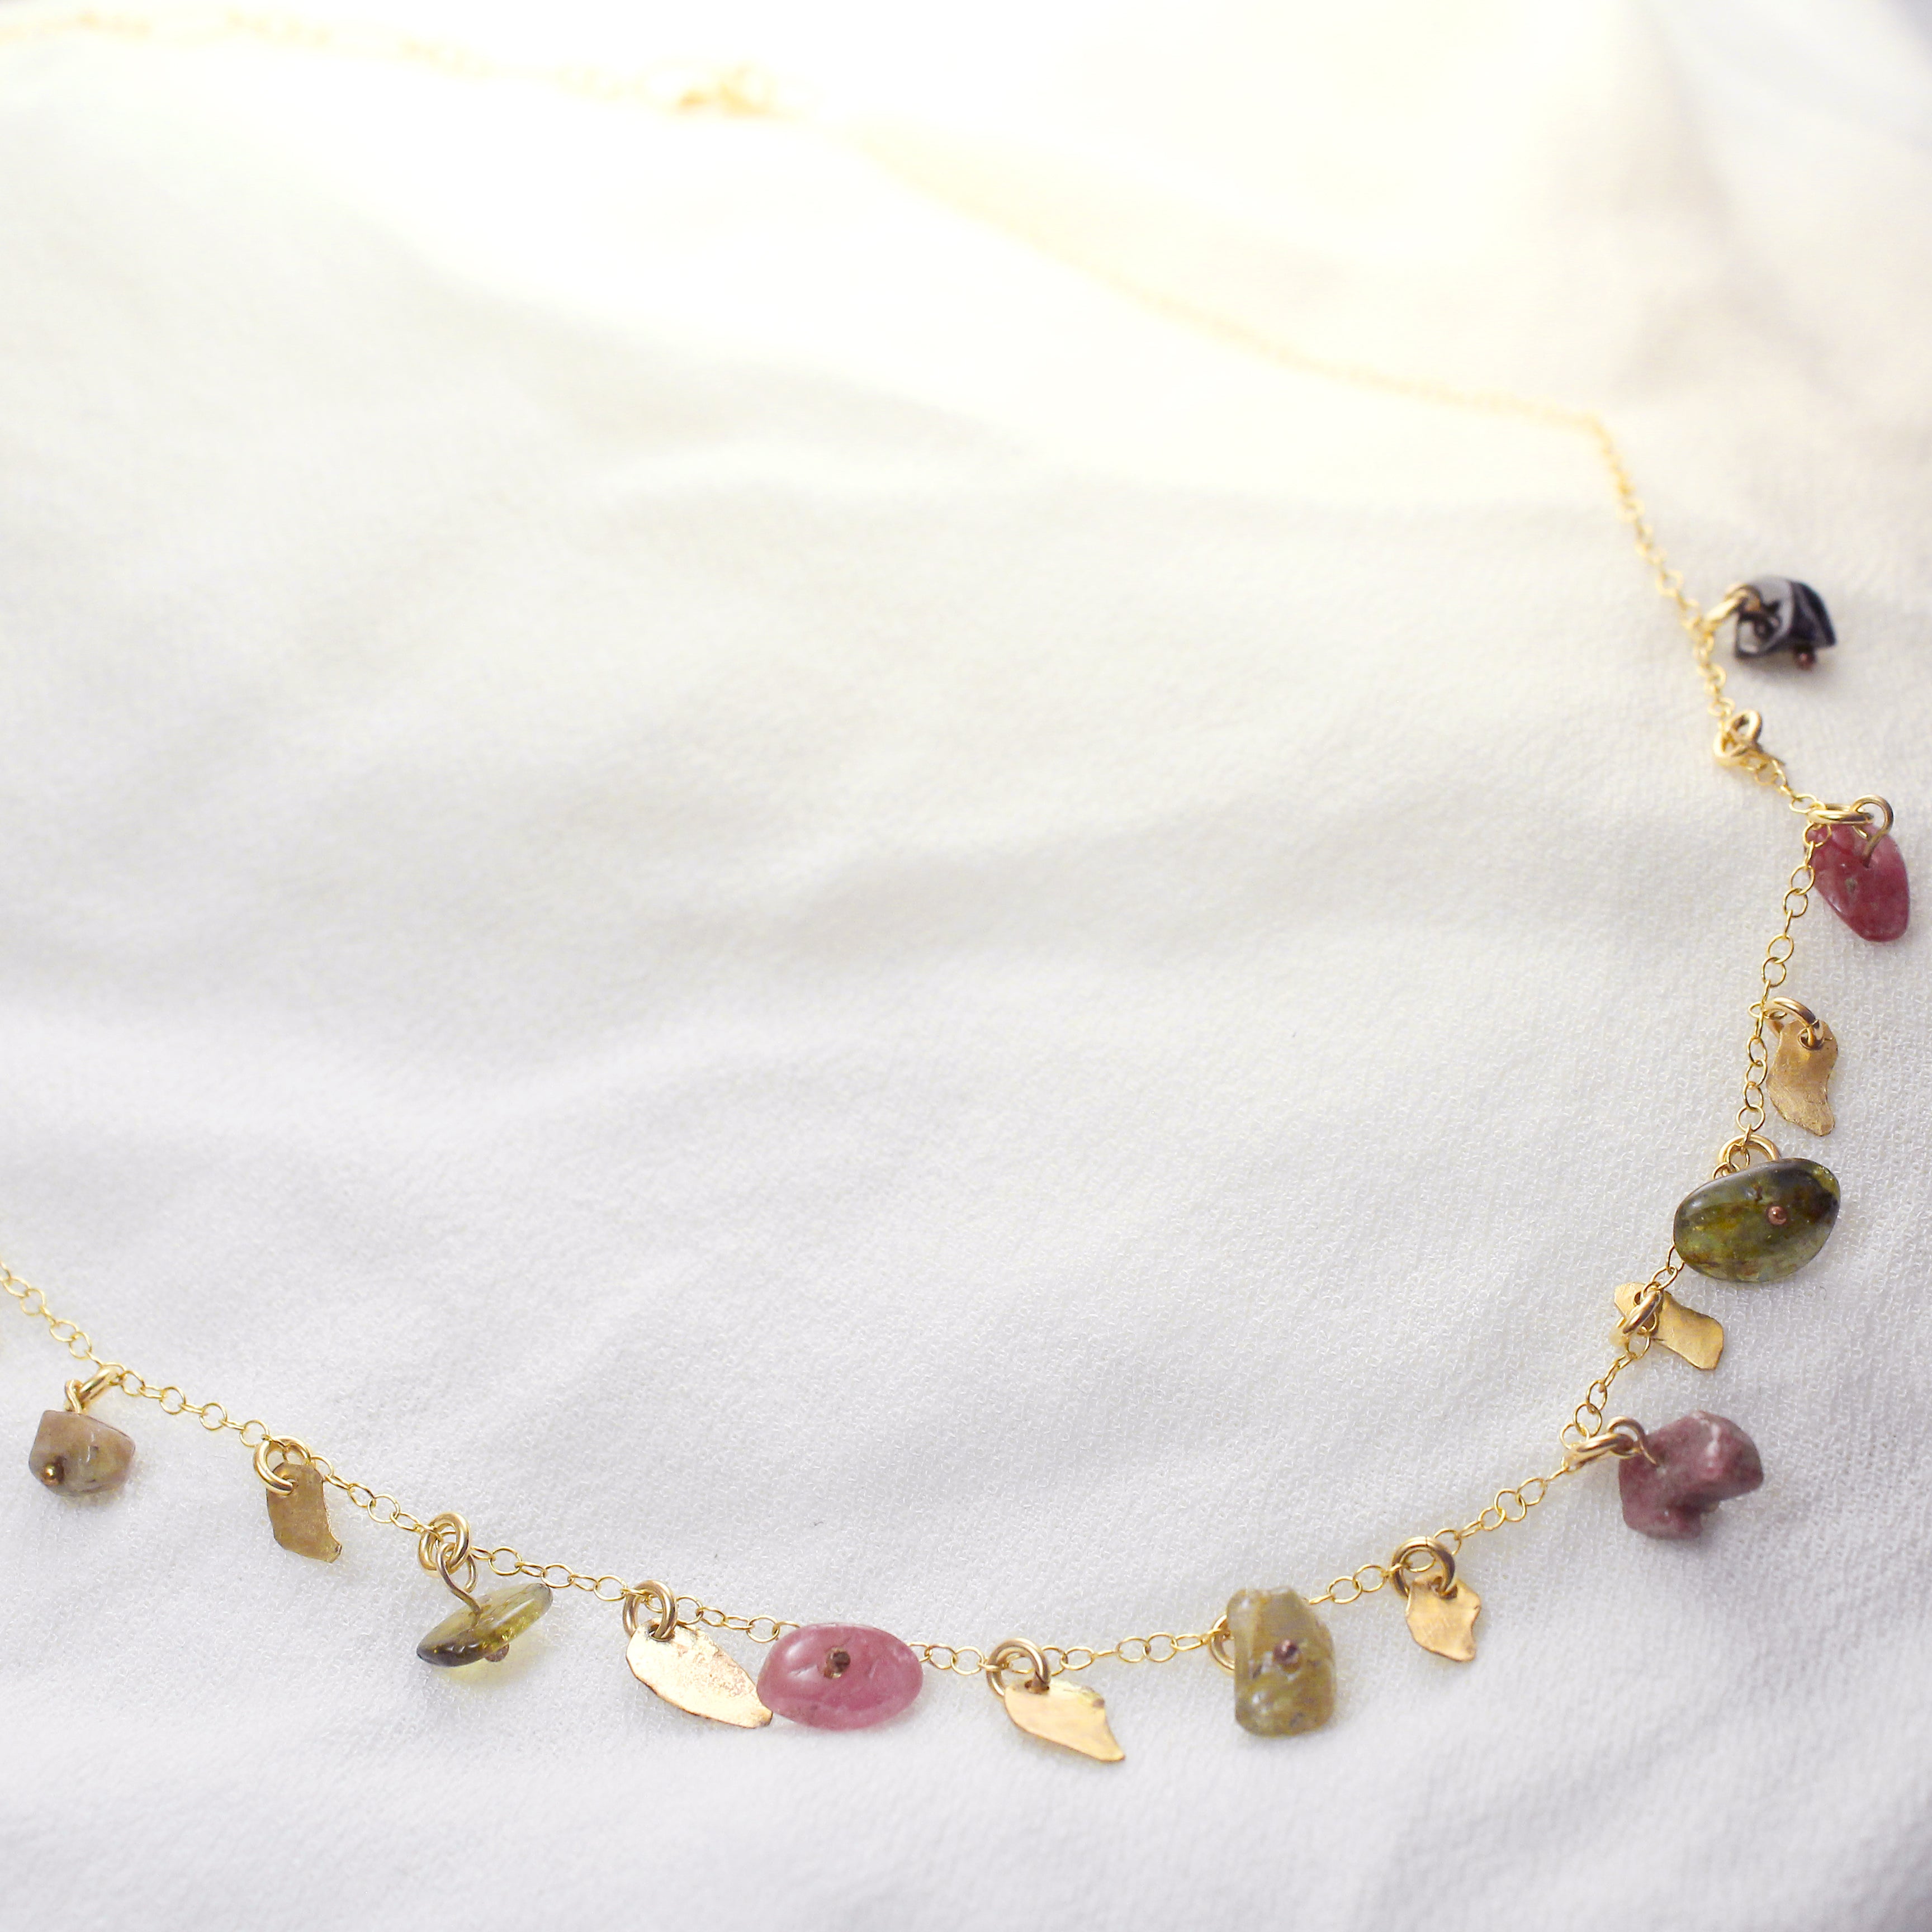 Golden Leaves - Gold-Filled Leaves & Tourmaline Gemstone Necklace